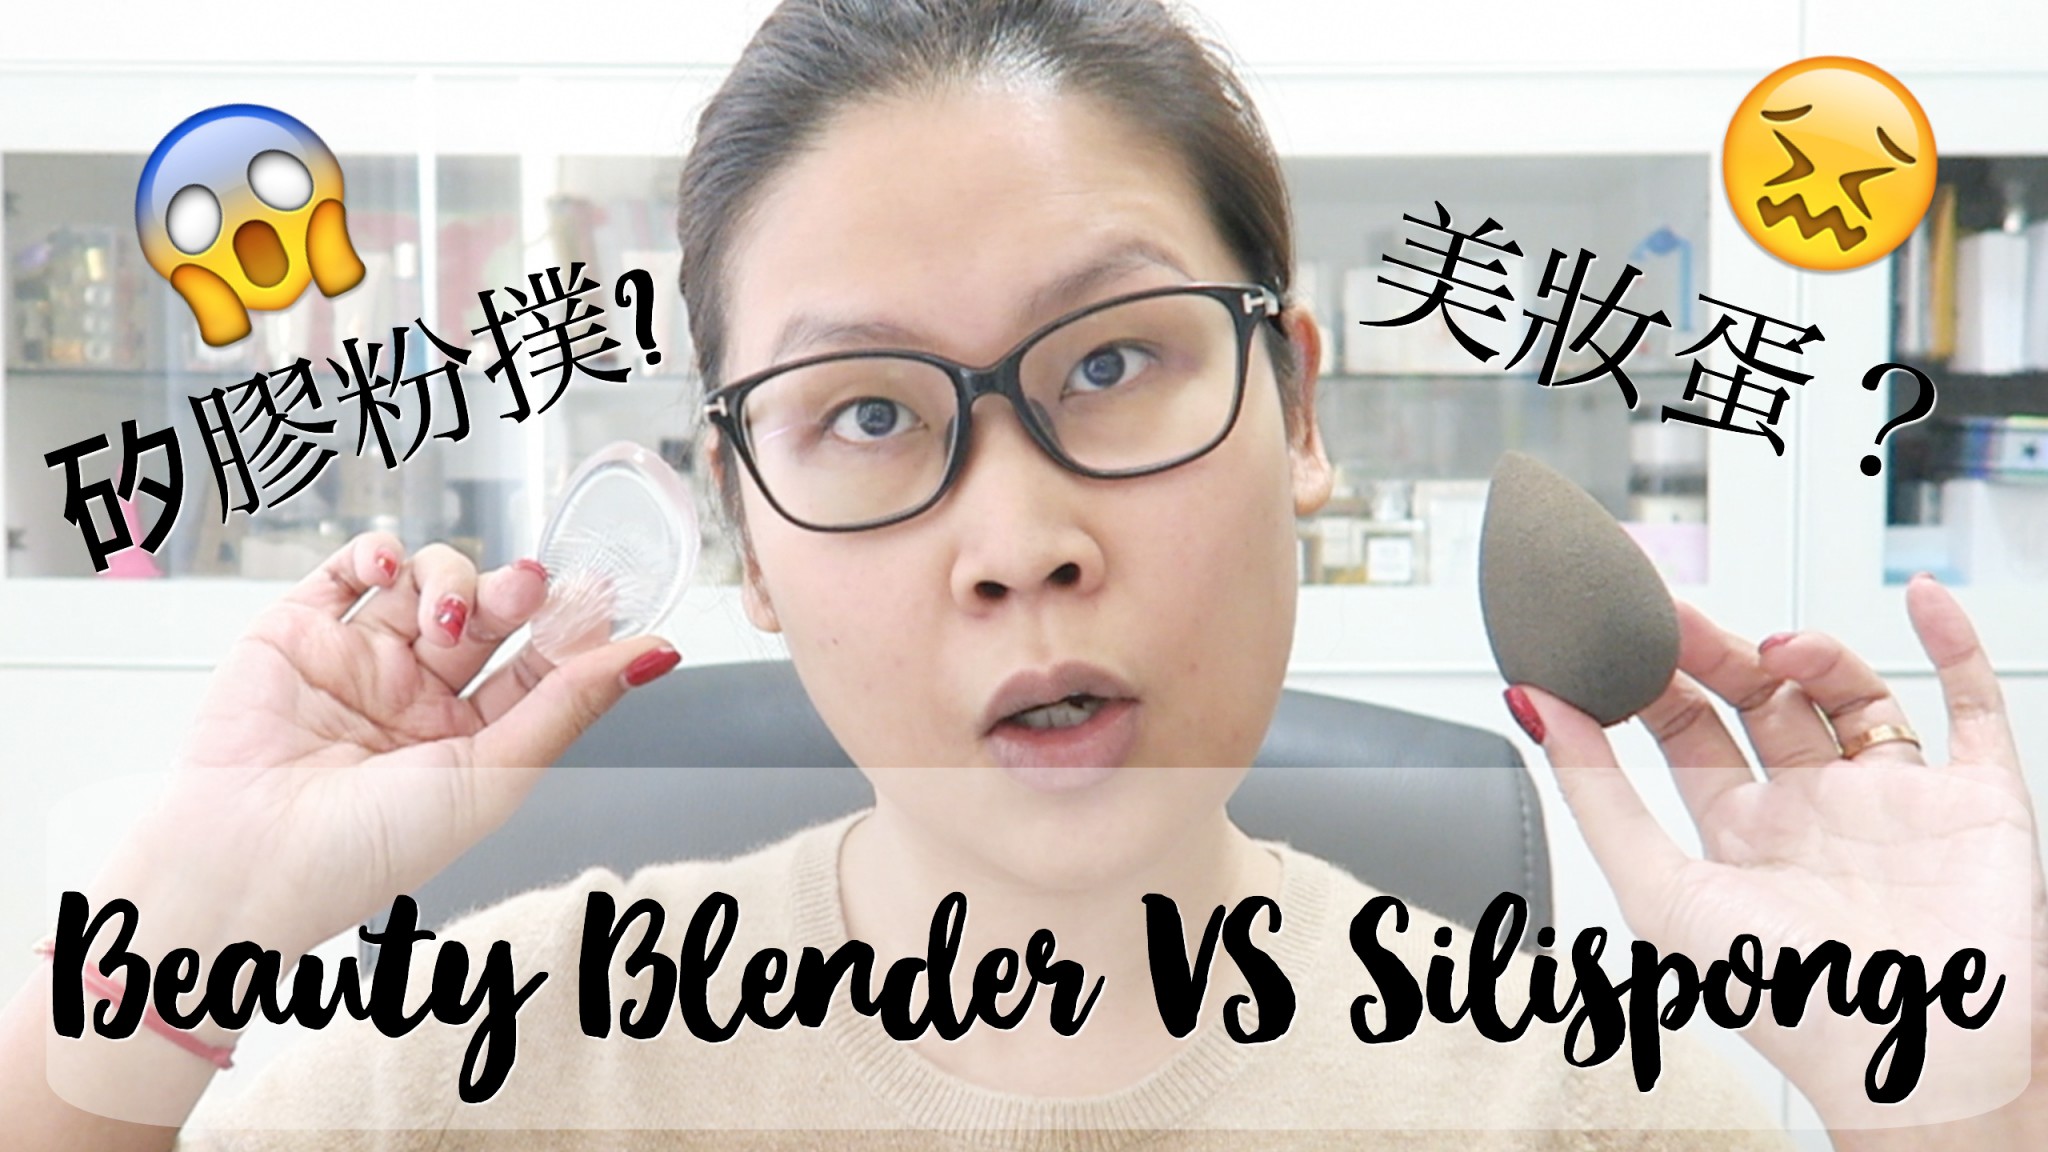 Beauty Blender VS 矽膠粉撲 Silisponge